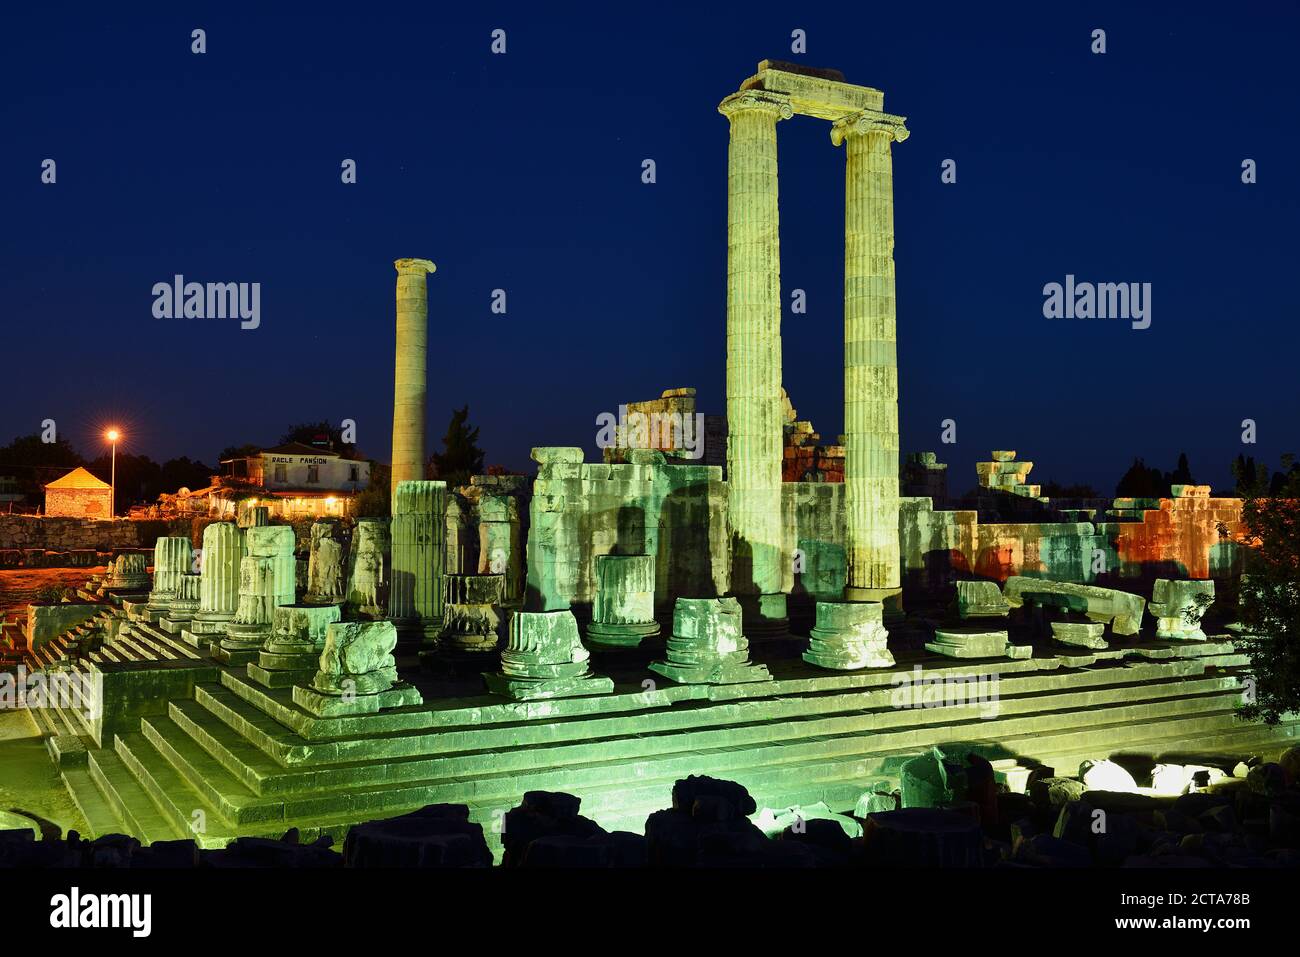 La Turquie, Aydin, Ionie, vue du temple d'Apollon au site archéologique de Didymes Banque D'Images